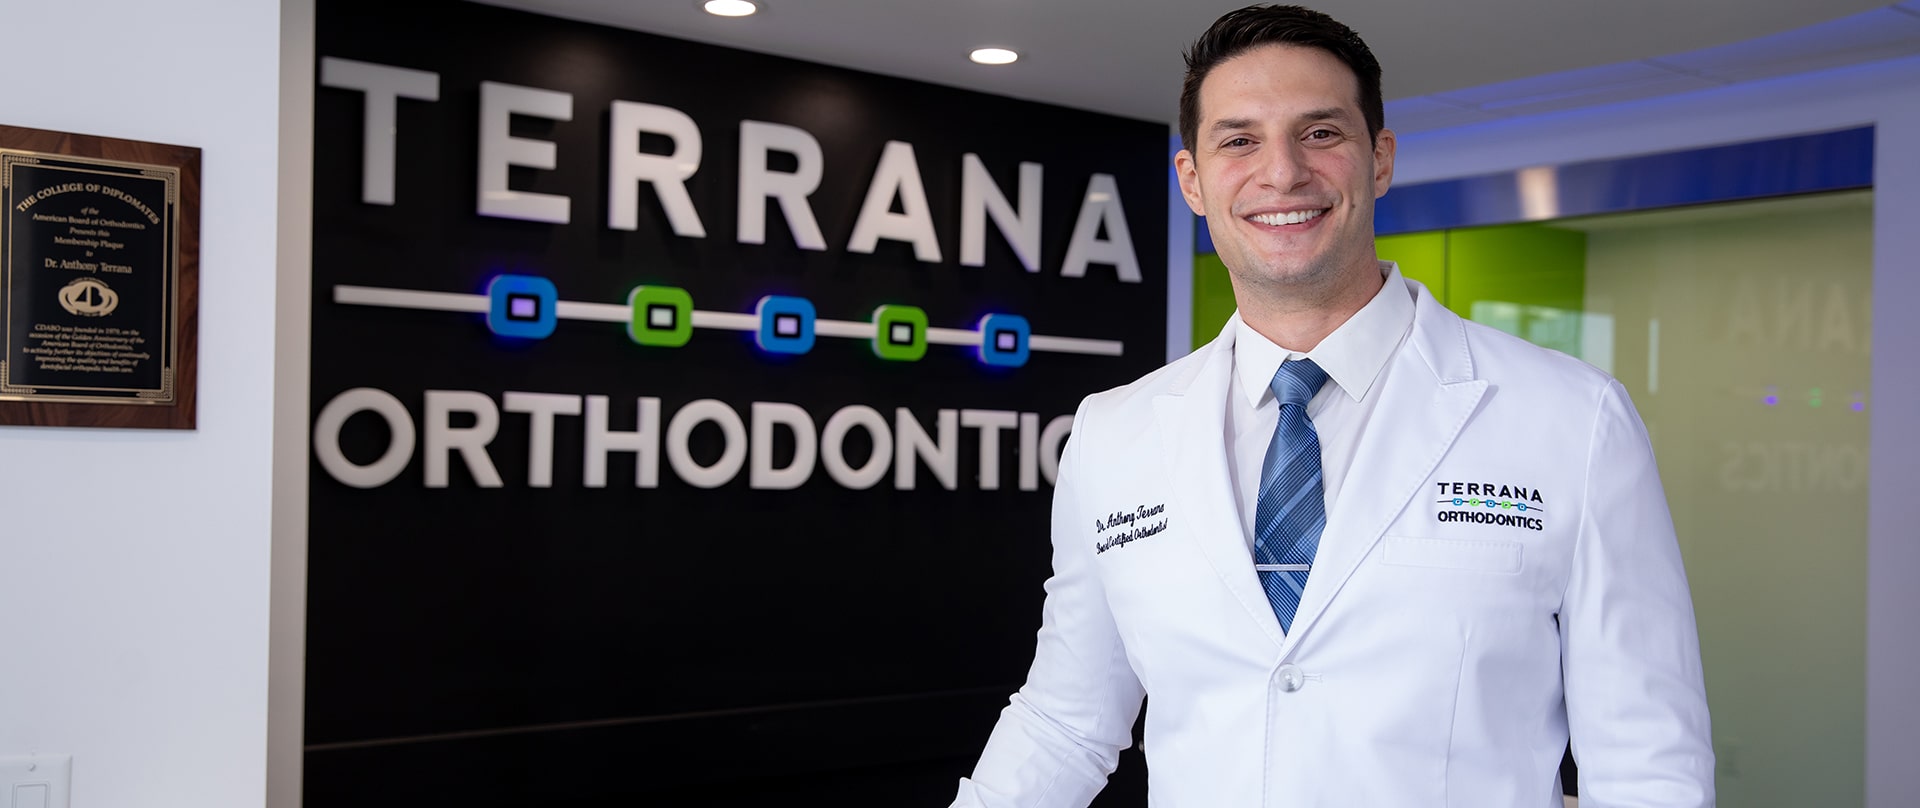 Dr. Terrana